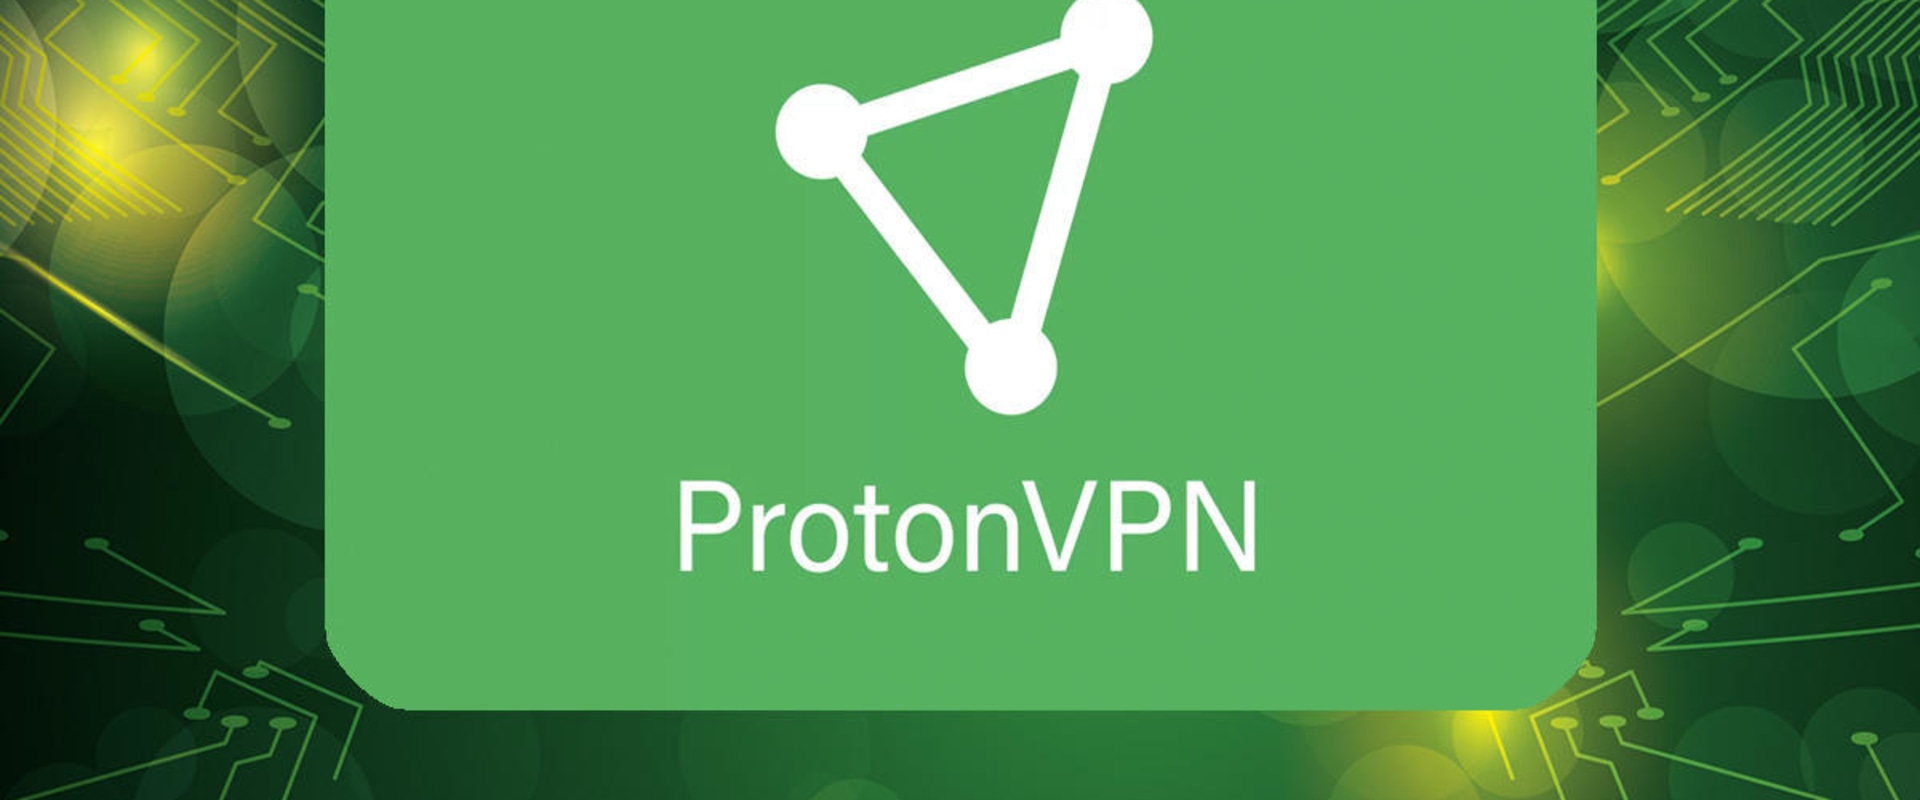 Comment configurer un service VPN sur votre routeur domestique ou professionnel ?